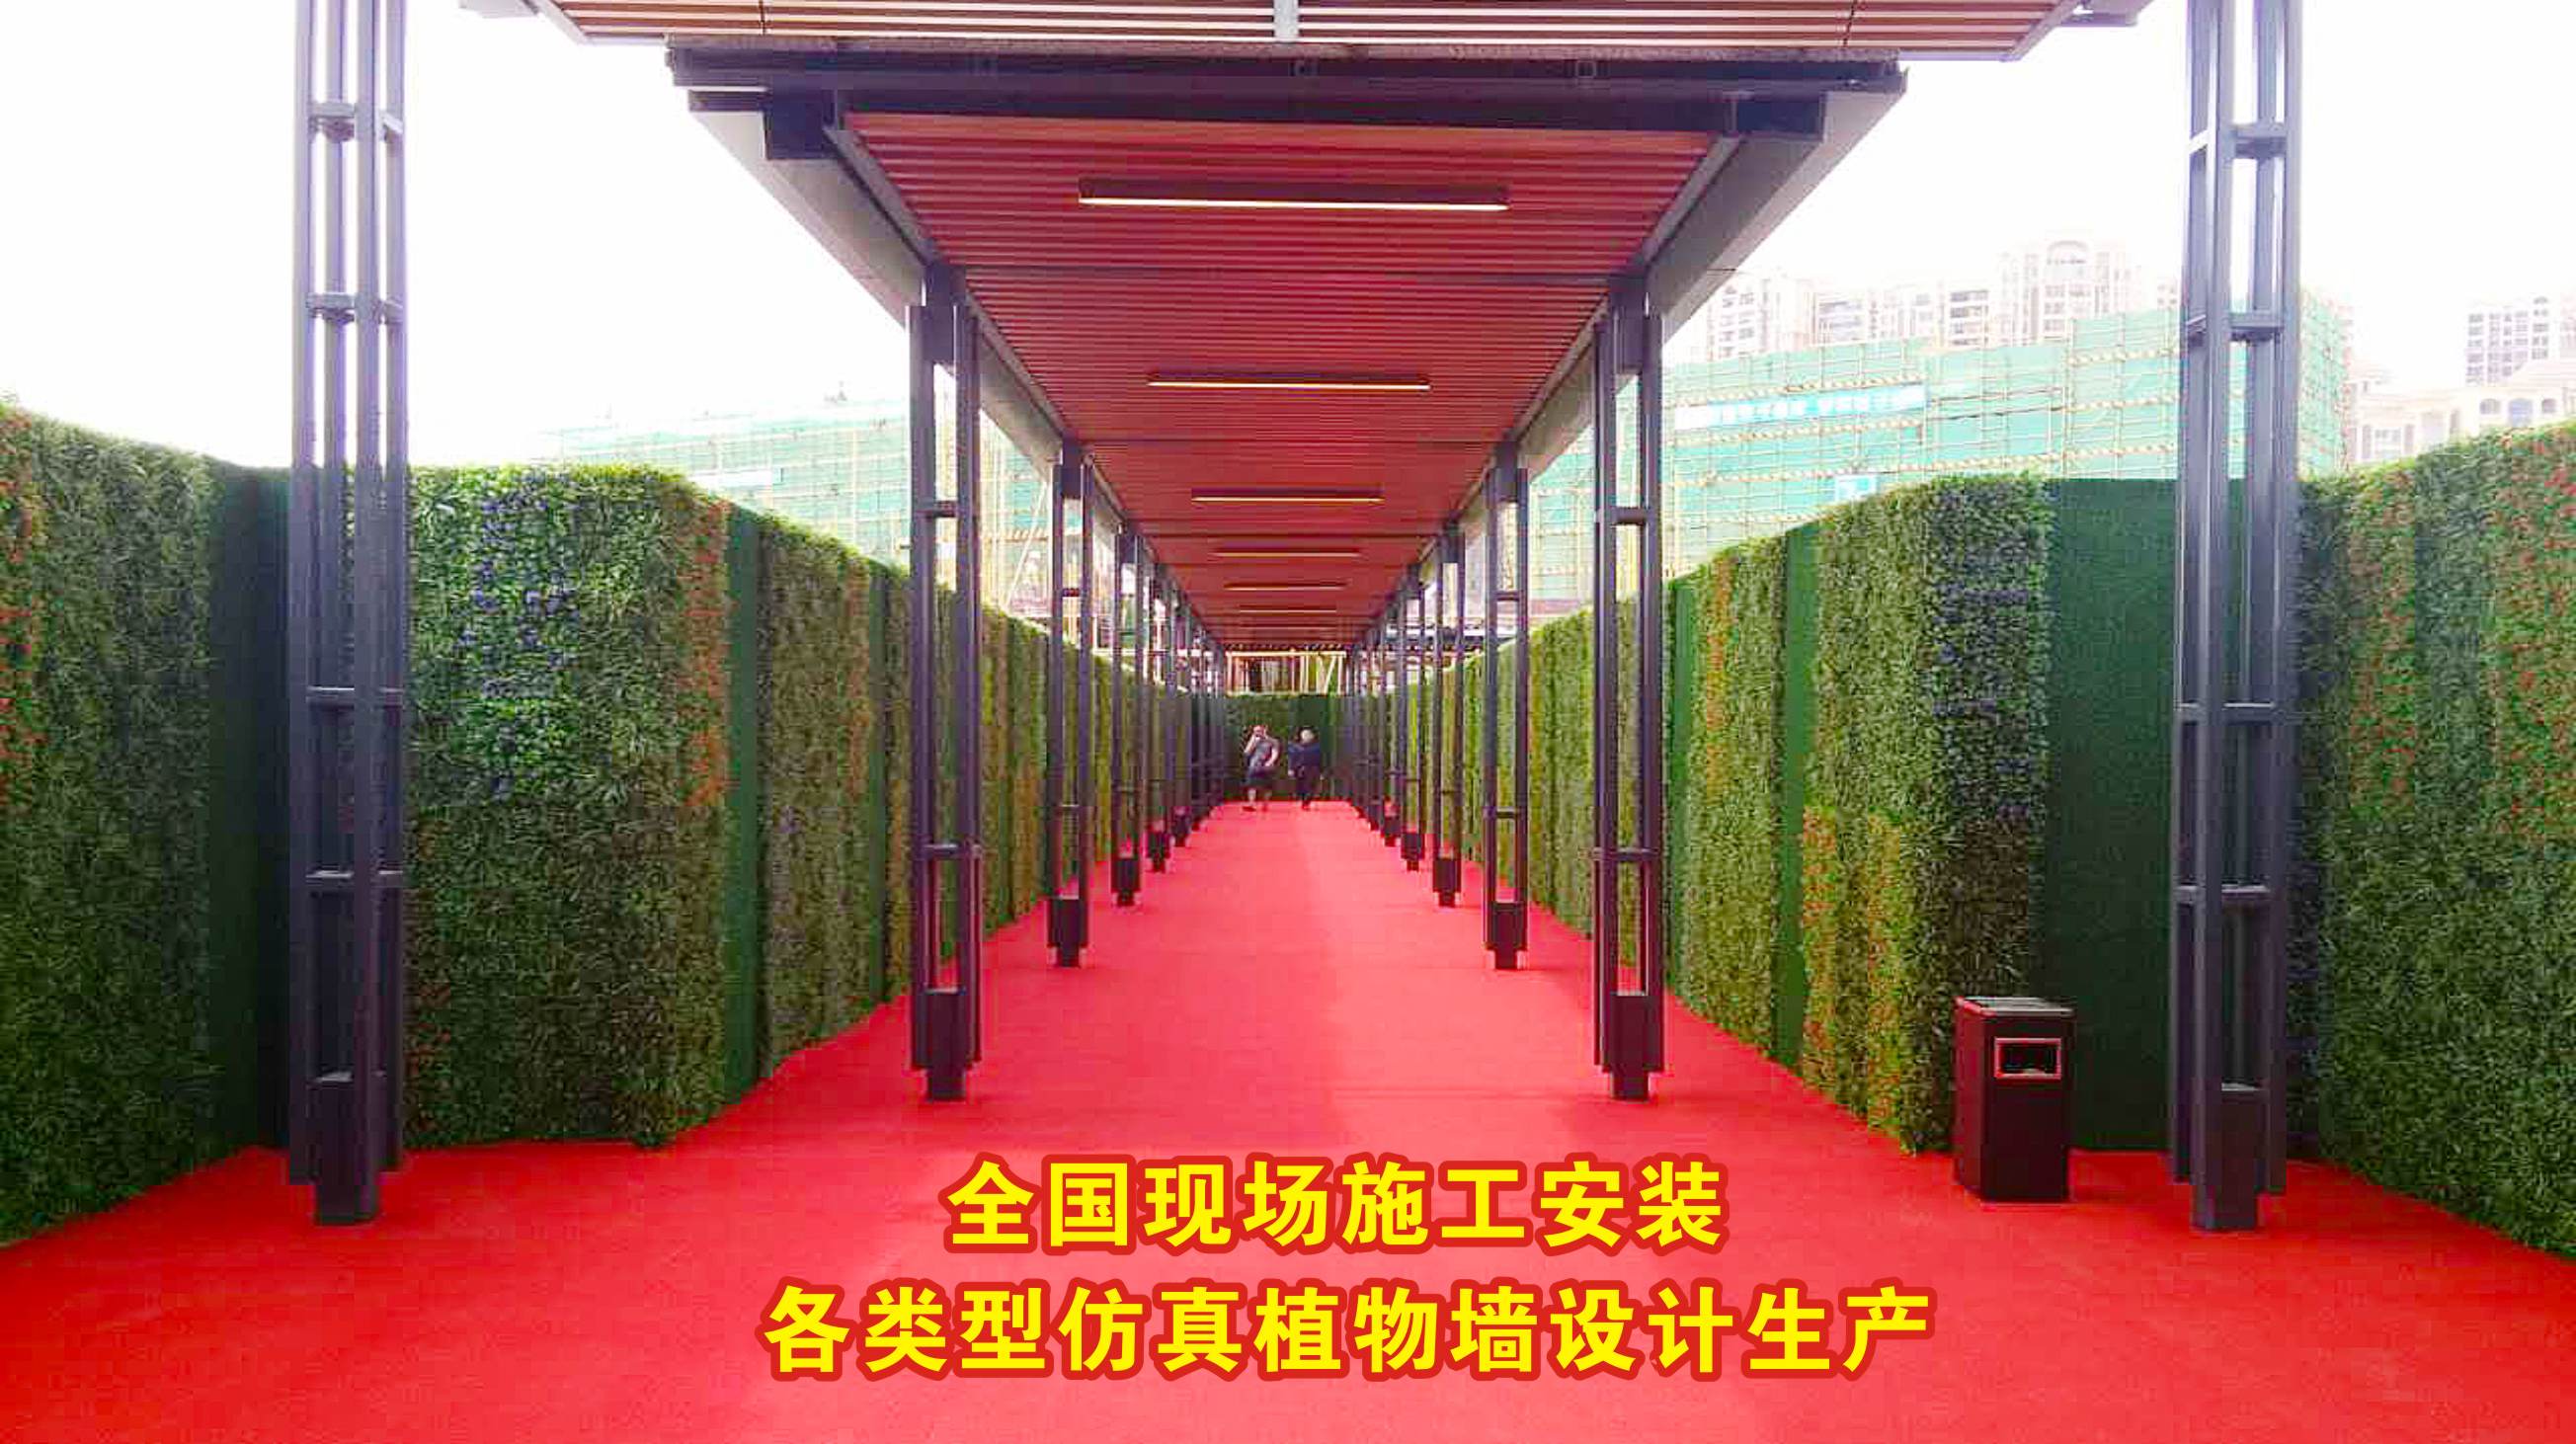 优质仿真绿植墙/墙体植物种类丰富,防晒/阻燃，按需设计生产施工约300.00元(图15)